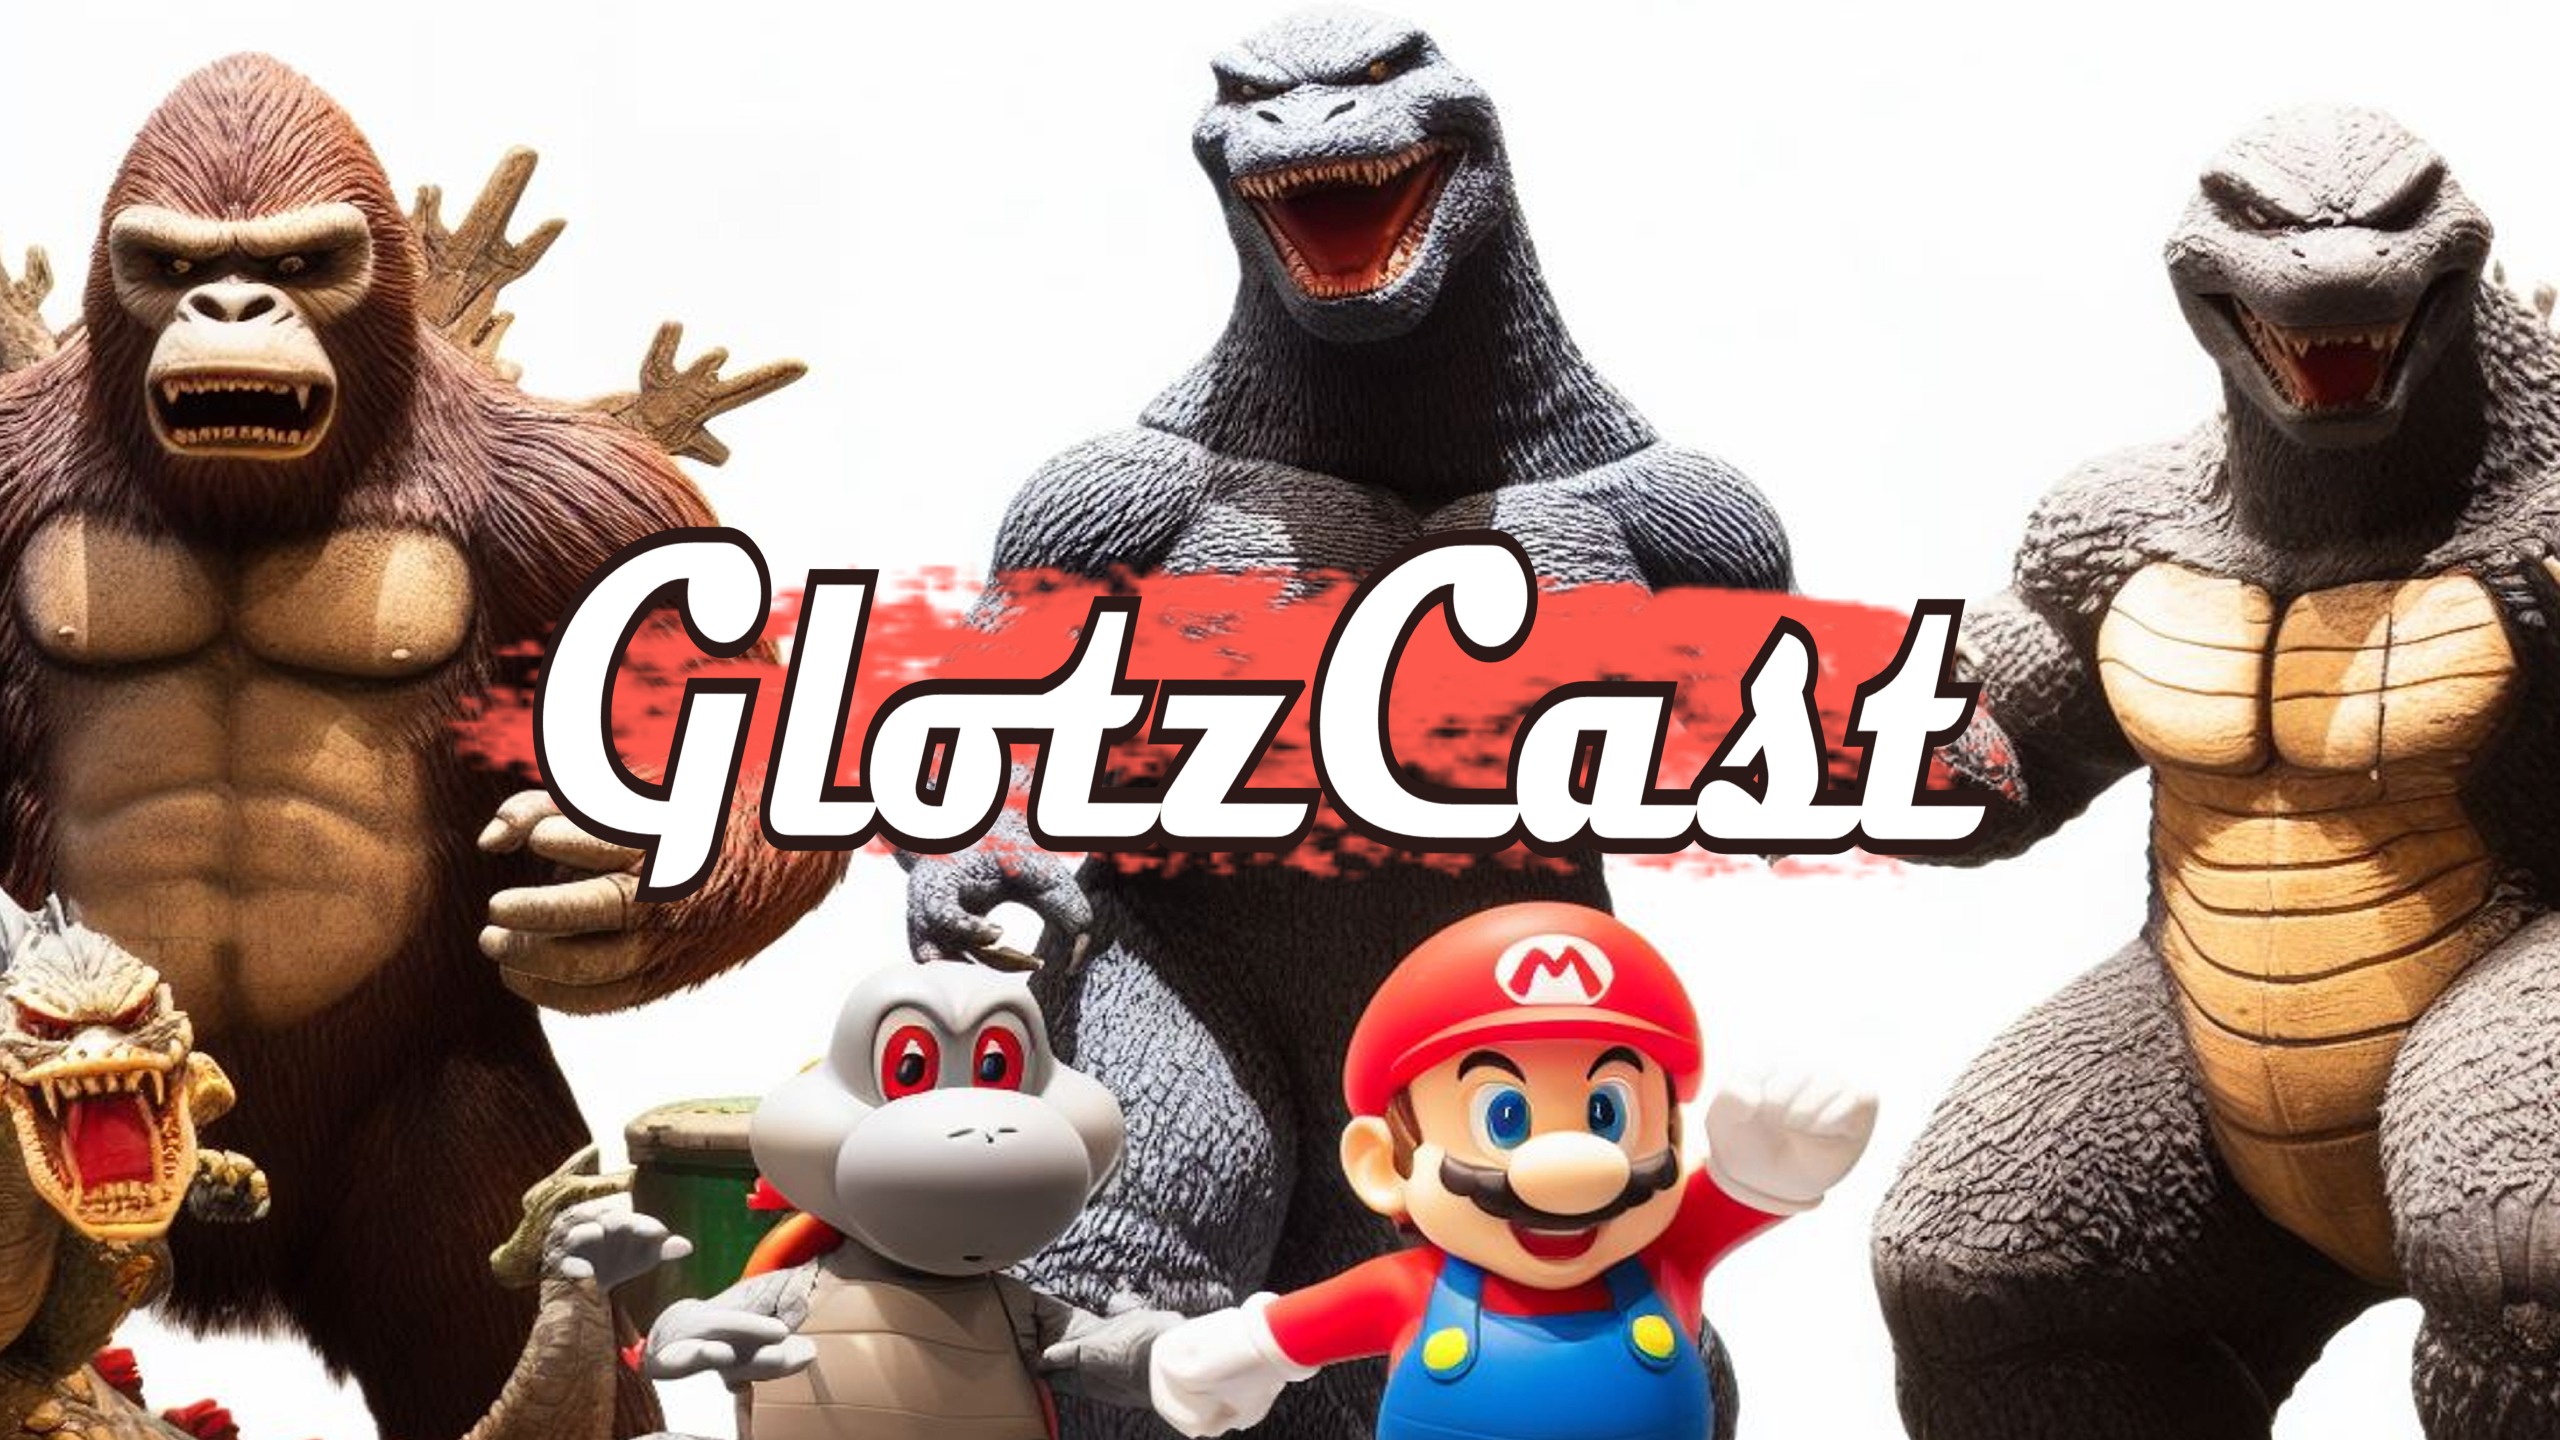 GlotzCast #138 – Liebenswerter Mockbuster-Schrott von The Asylum: Ist Mario wirklich super?